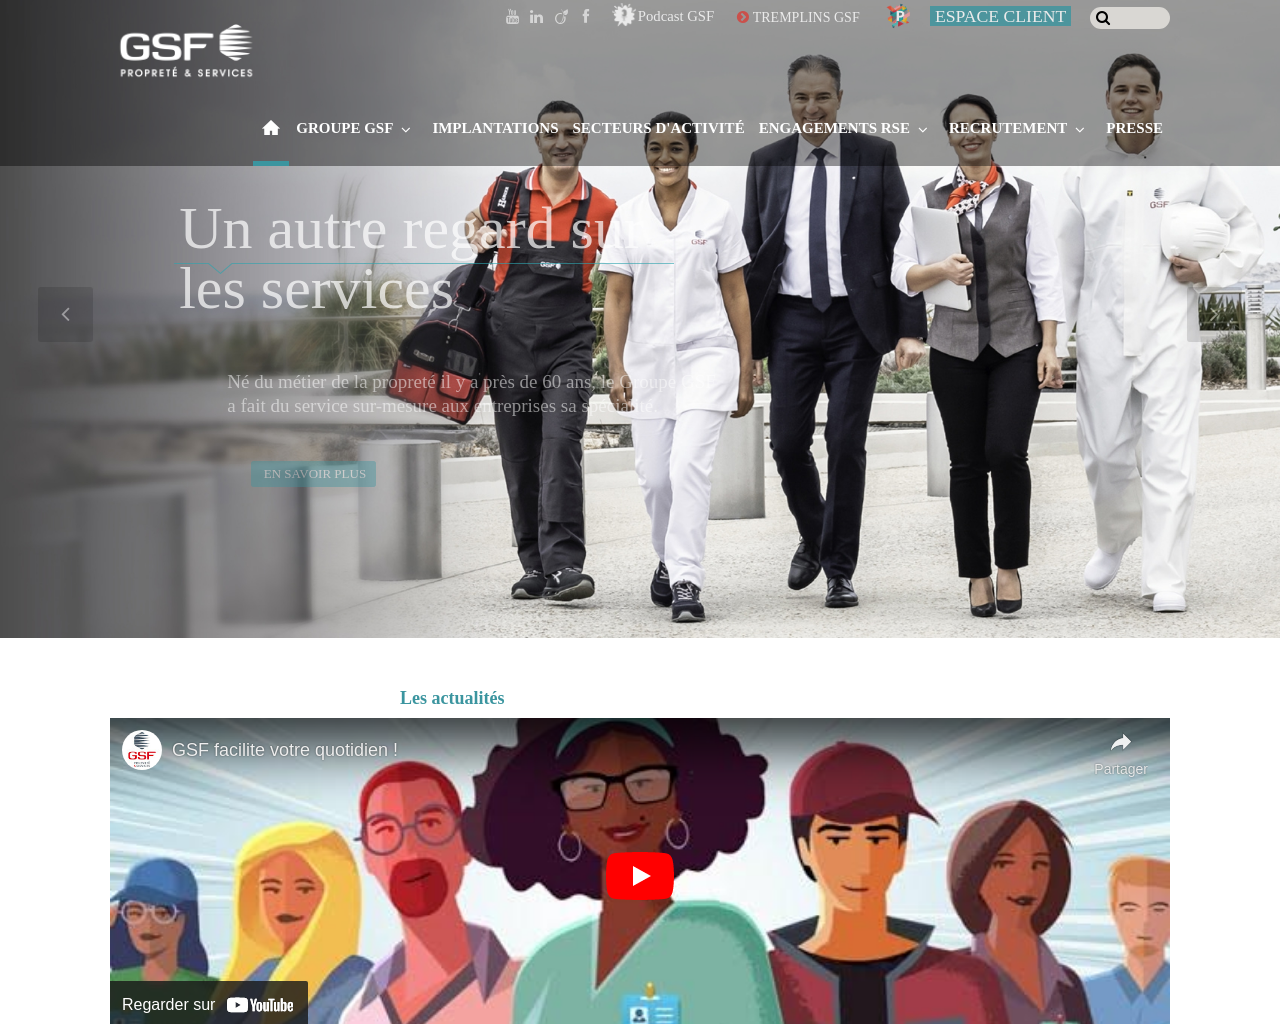 www.gsf.fr